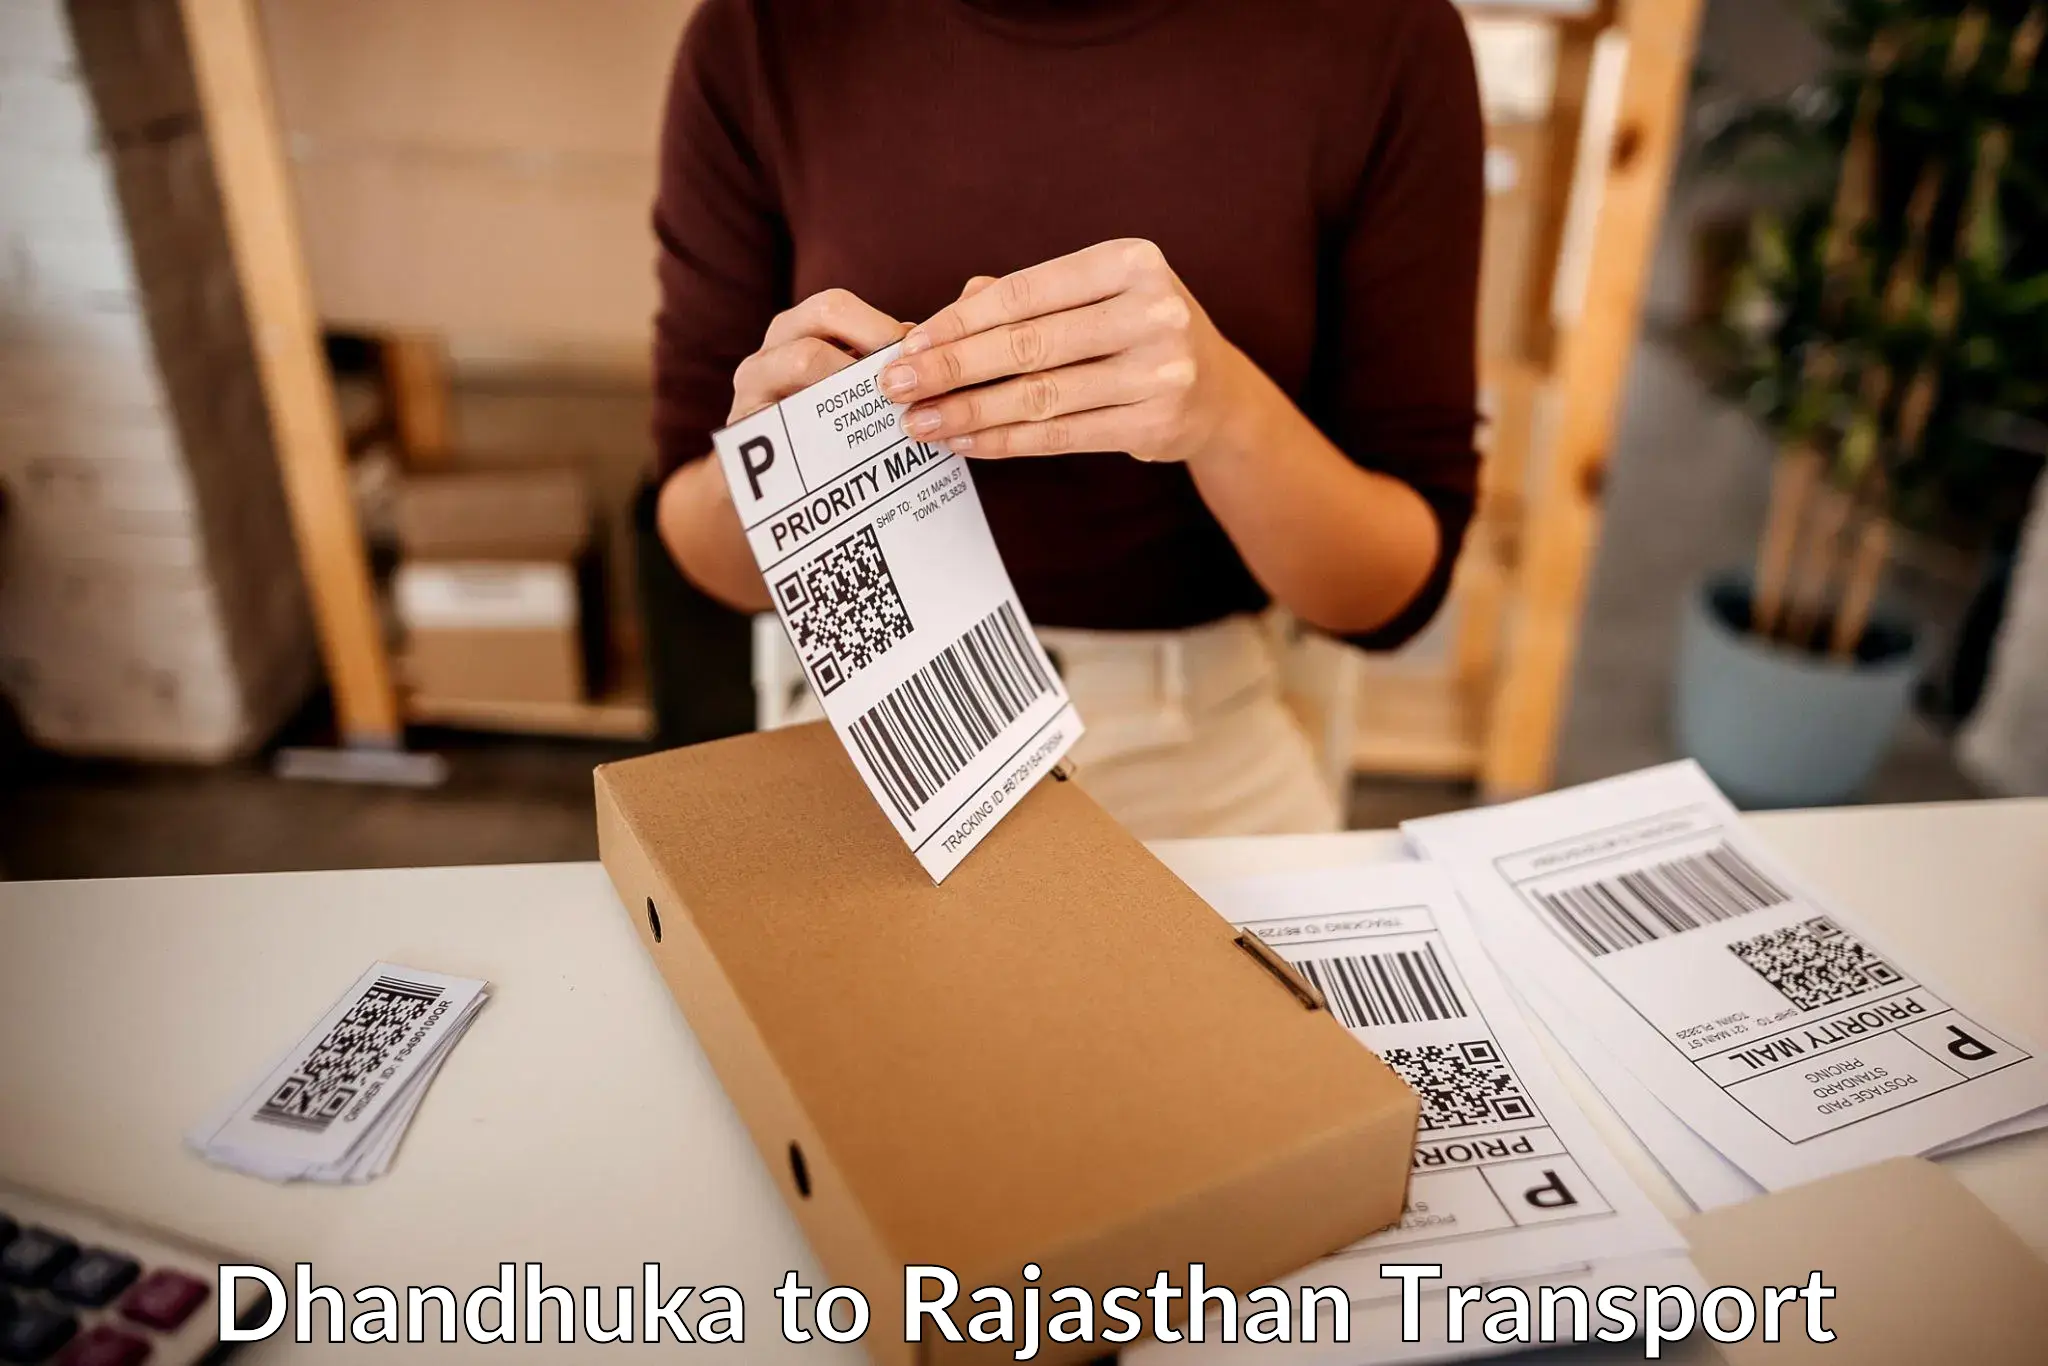 Pick up transport service Dhandhuka to NIT Jaipur